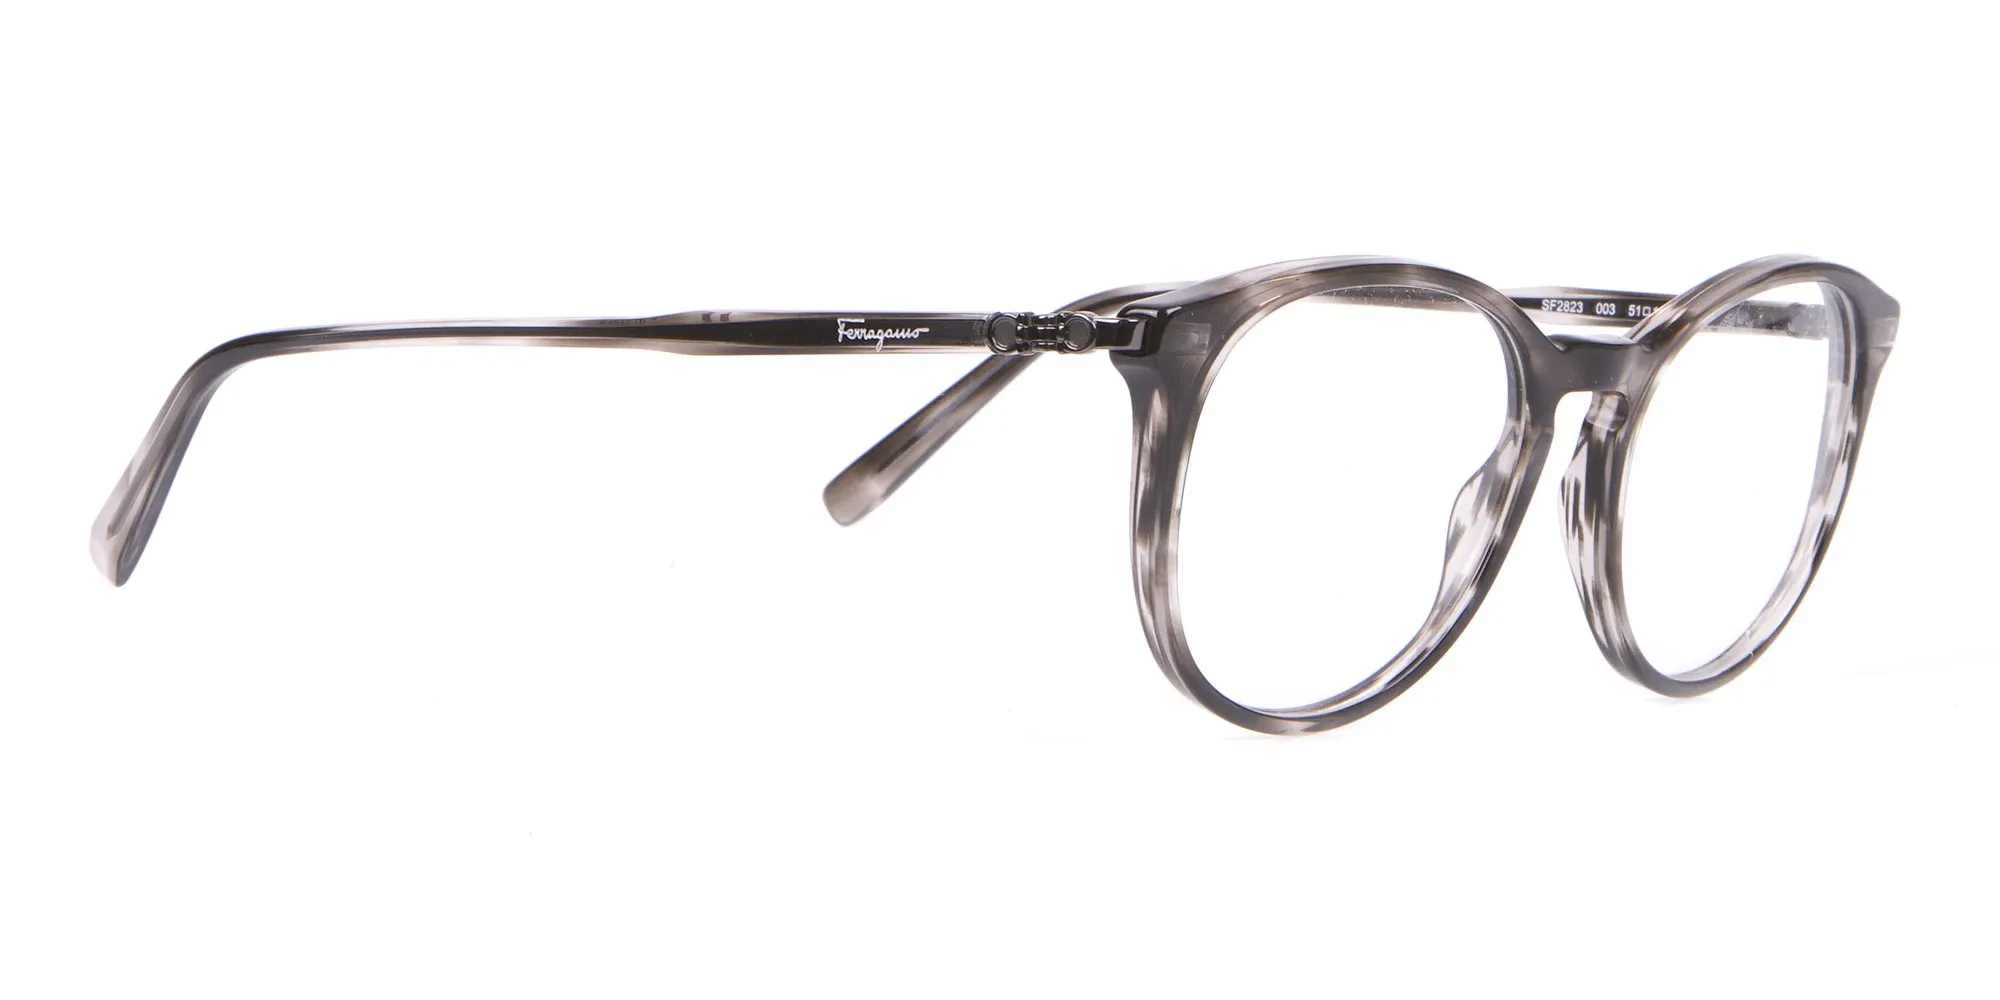 Salvatore Ferragamo SF2123 Retro Round Glasses Grey Horn-2